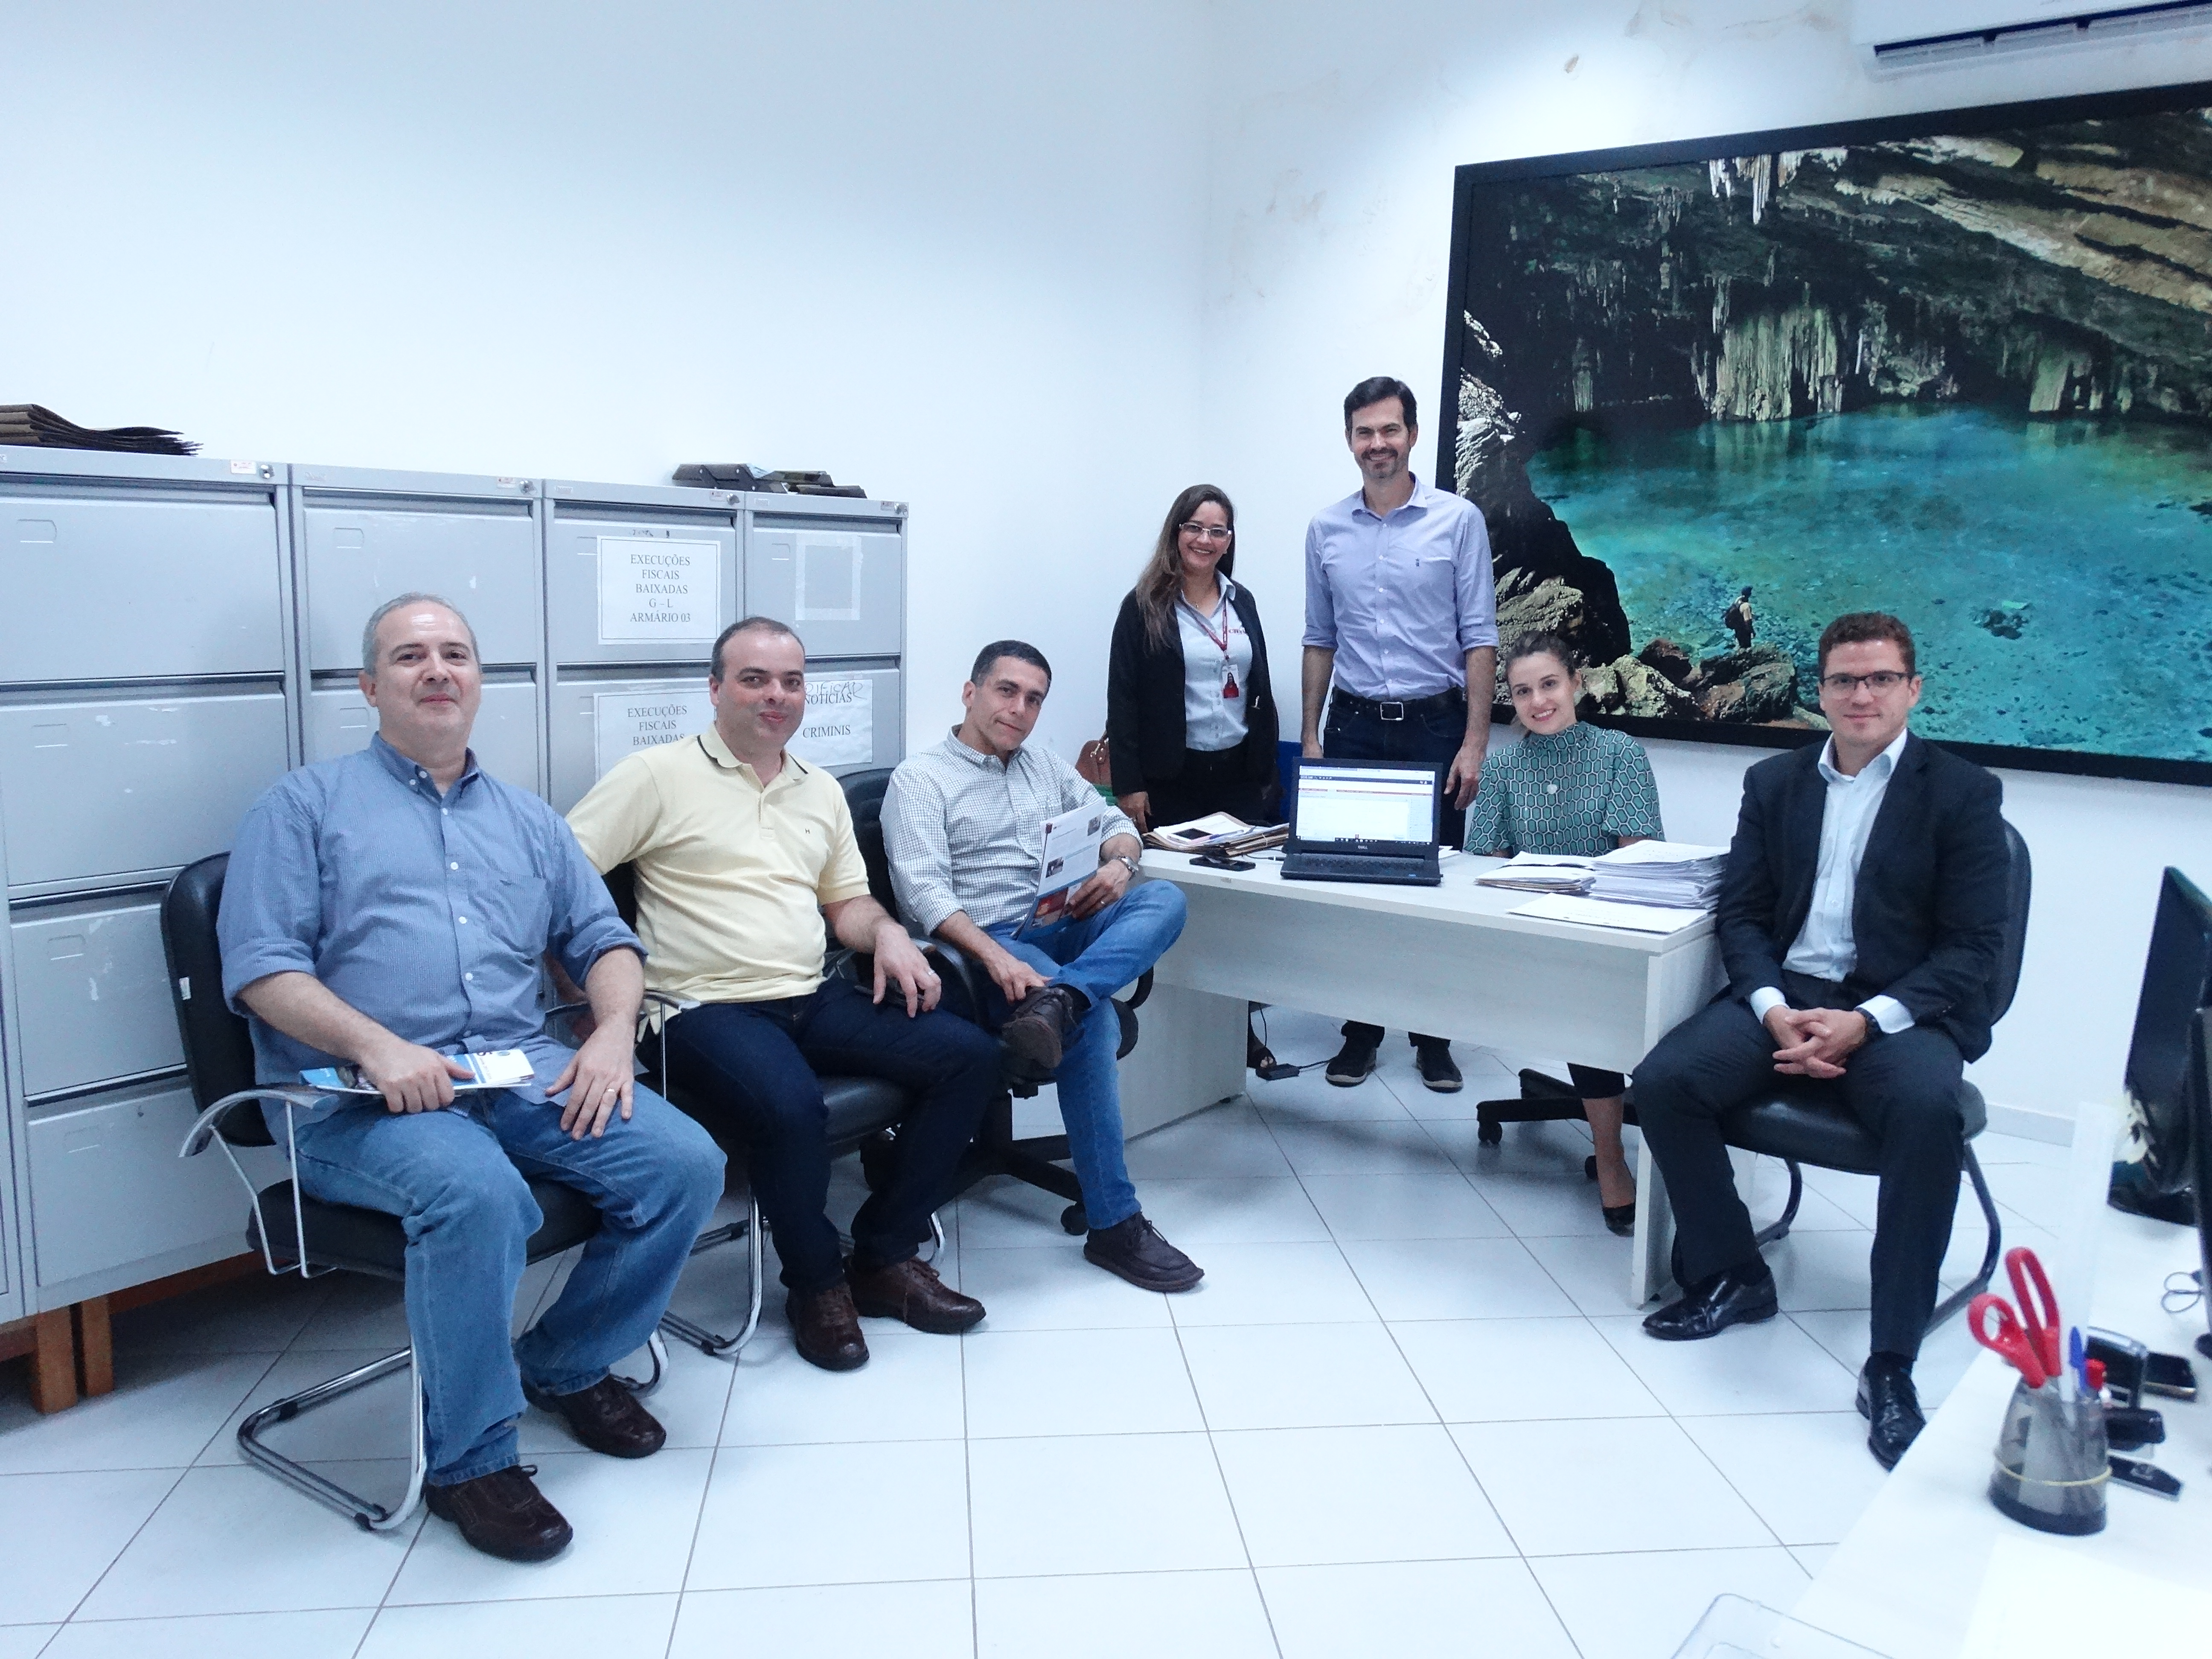 Conselheiros do Rio de Janeiro em visita à sede do CRO-MT